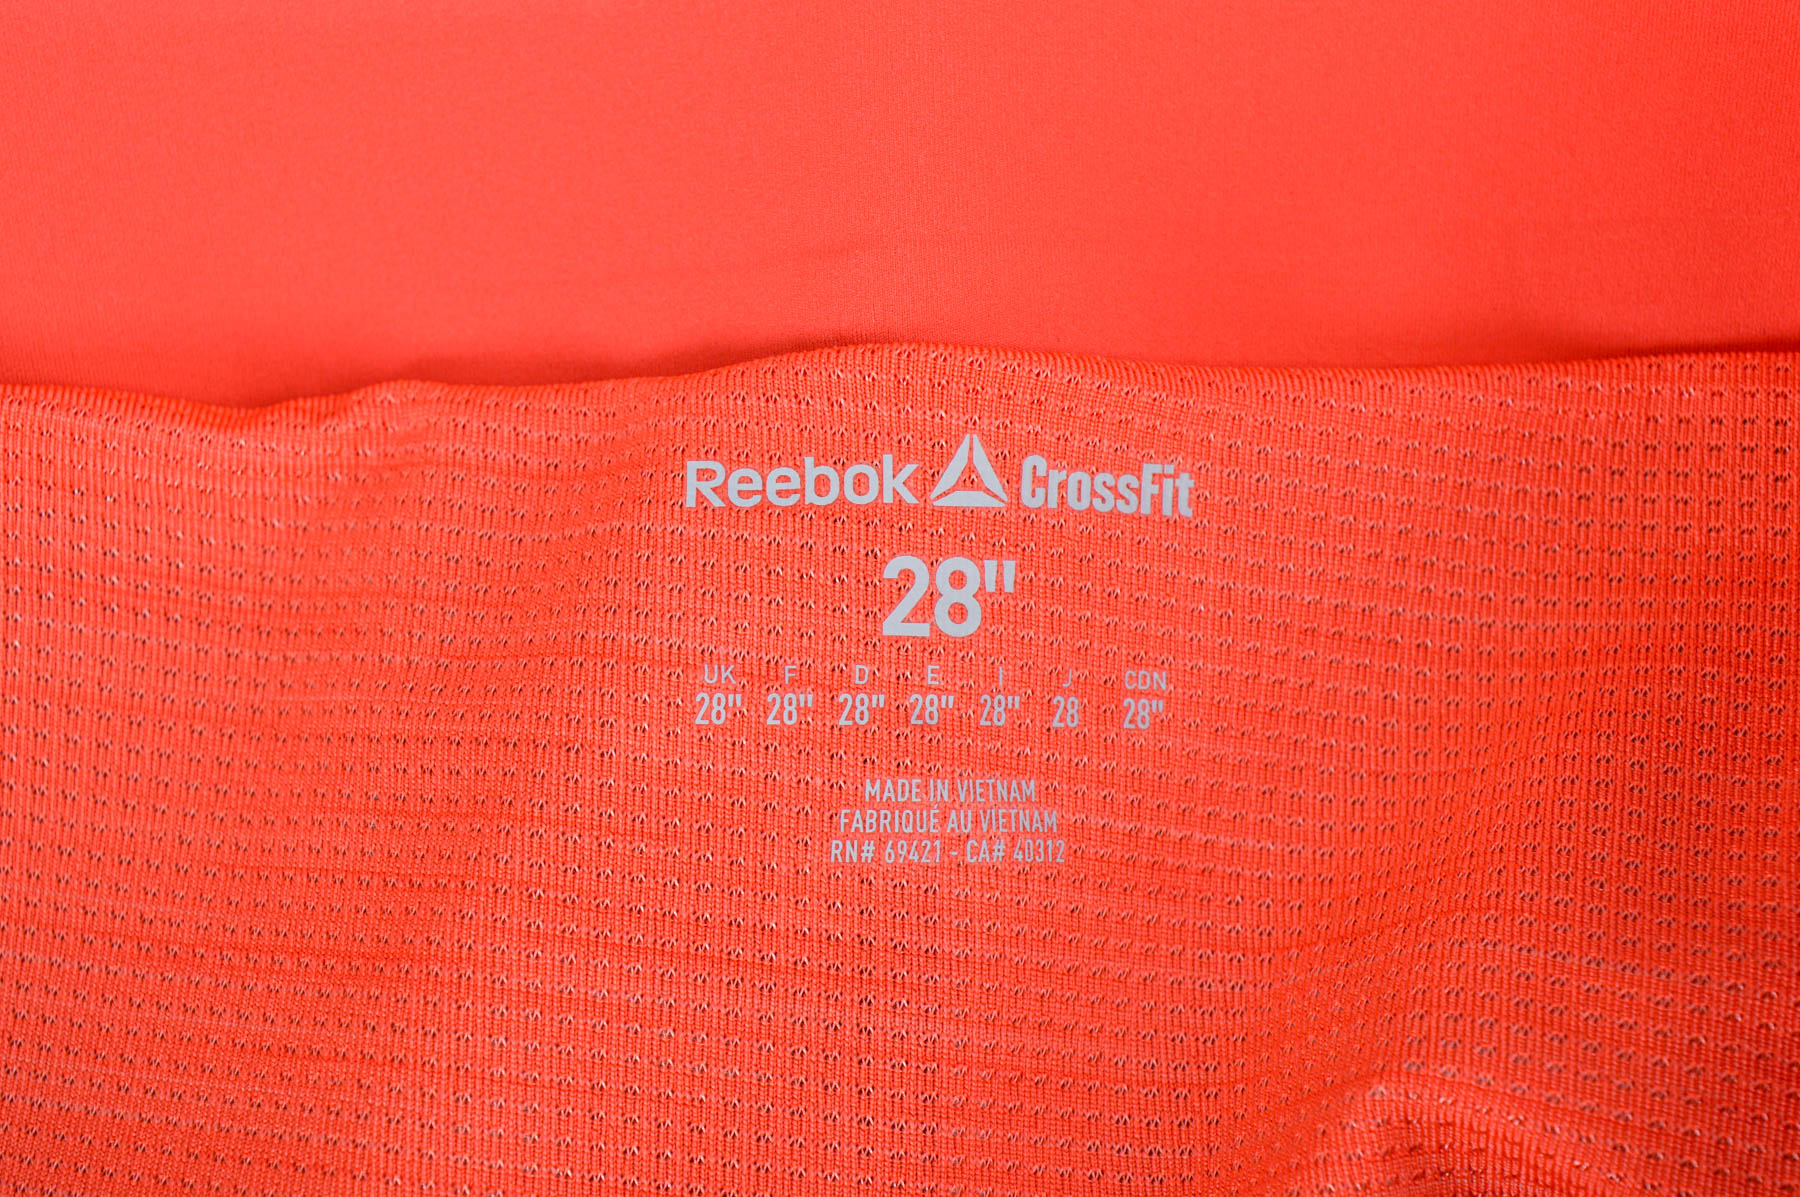 Women's shorts - Reebok Crossfit - 2